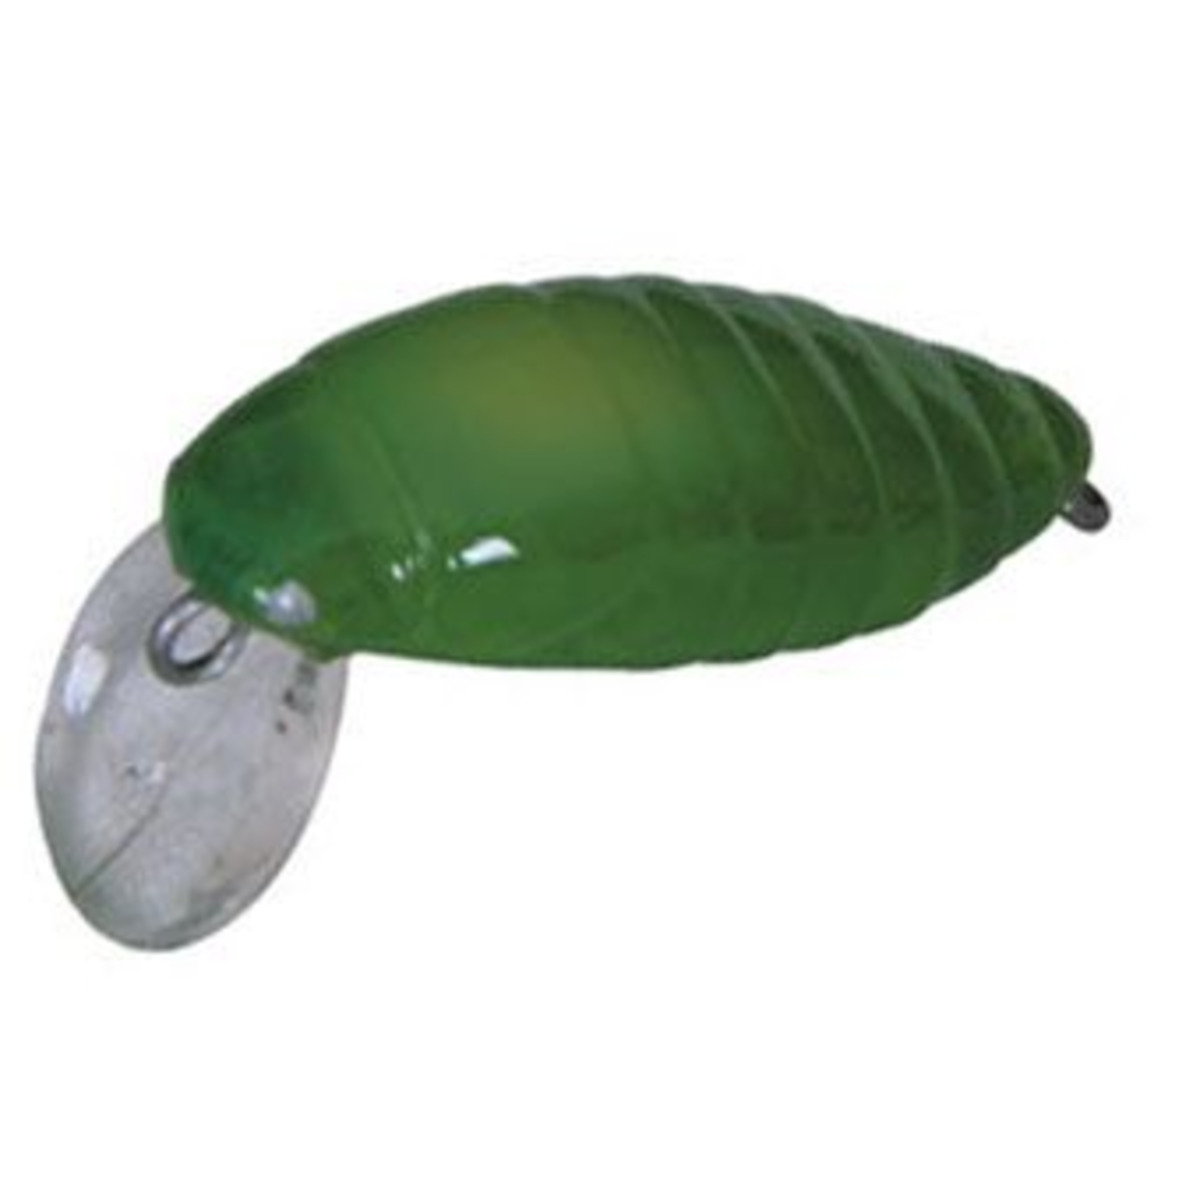 Nomura Shiro - 2.8 cm - 1.80 g - Green Snake